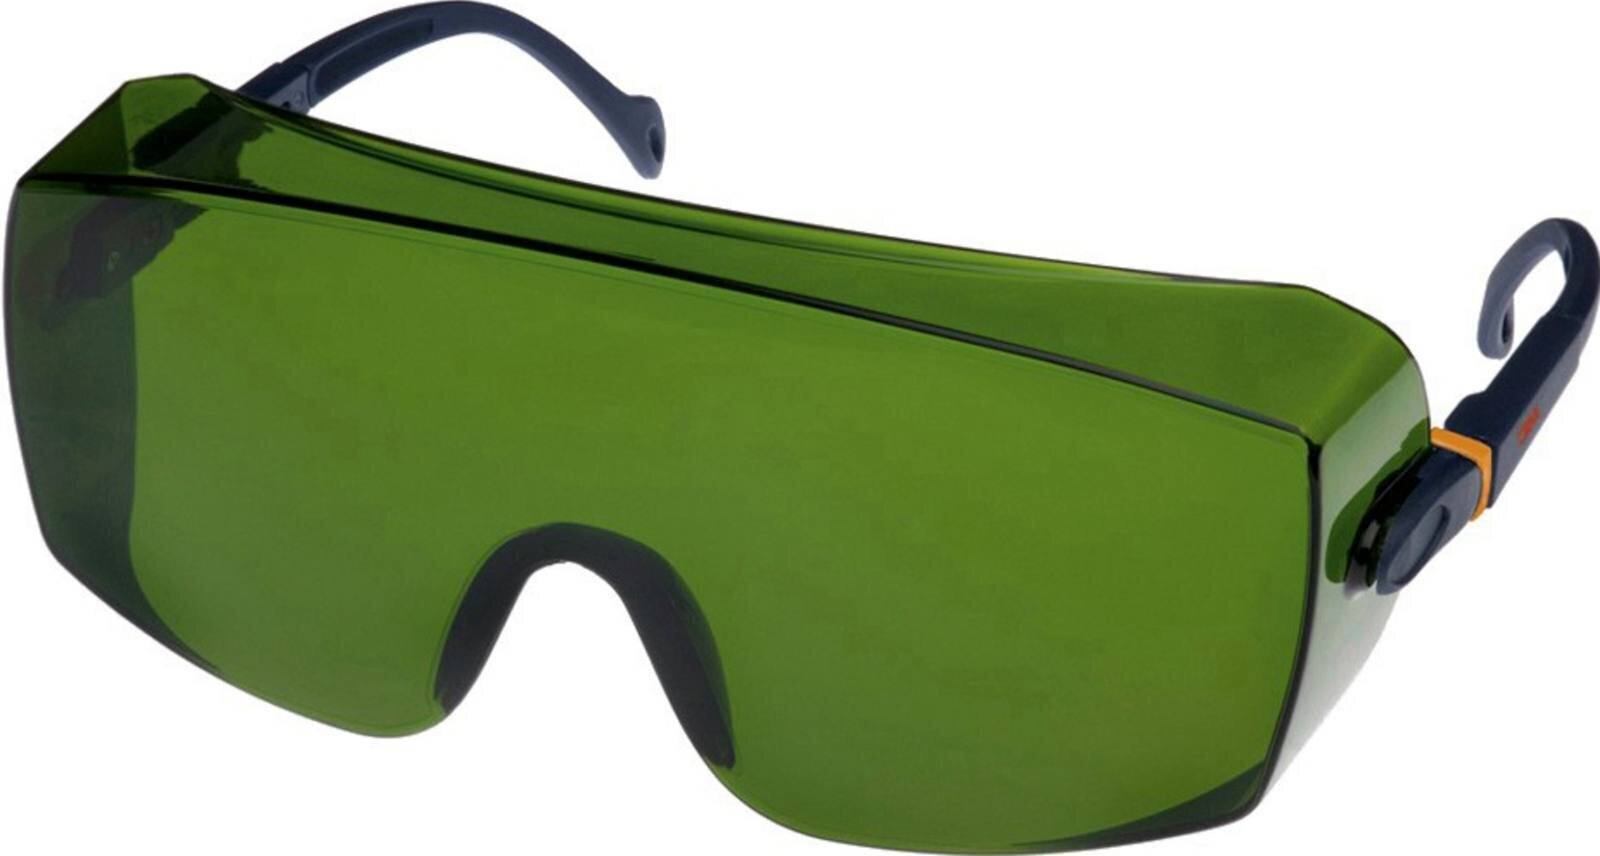 3M 2805 Schutzbrille AS/UV, PC, grün getönt, einstellbar, ideal als Überbrille für Brillenträger, IR 5.0 - geeignet für autogenes Schweissen und Hartlöten